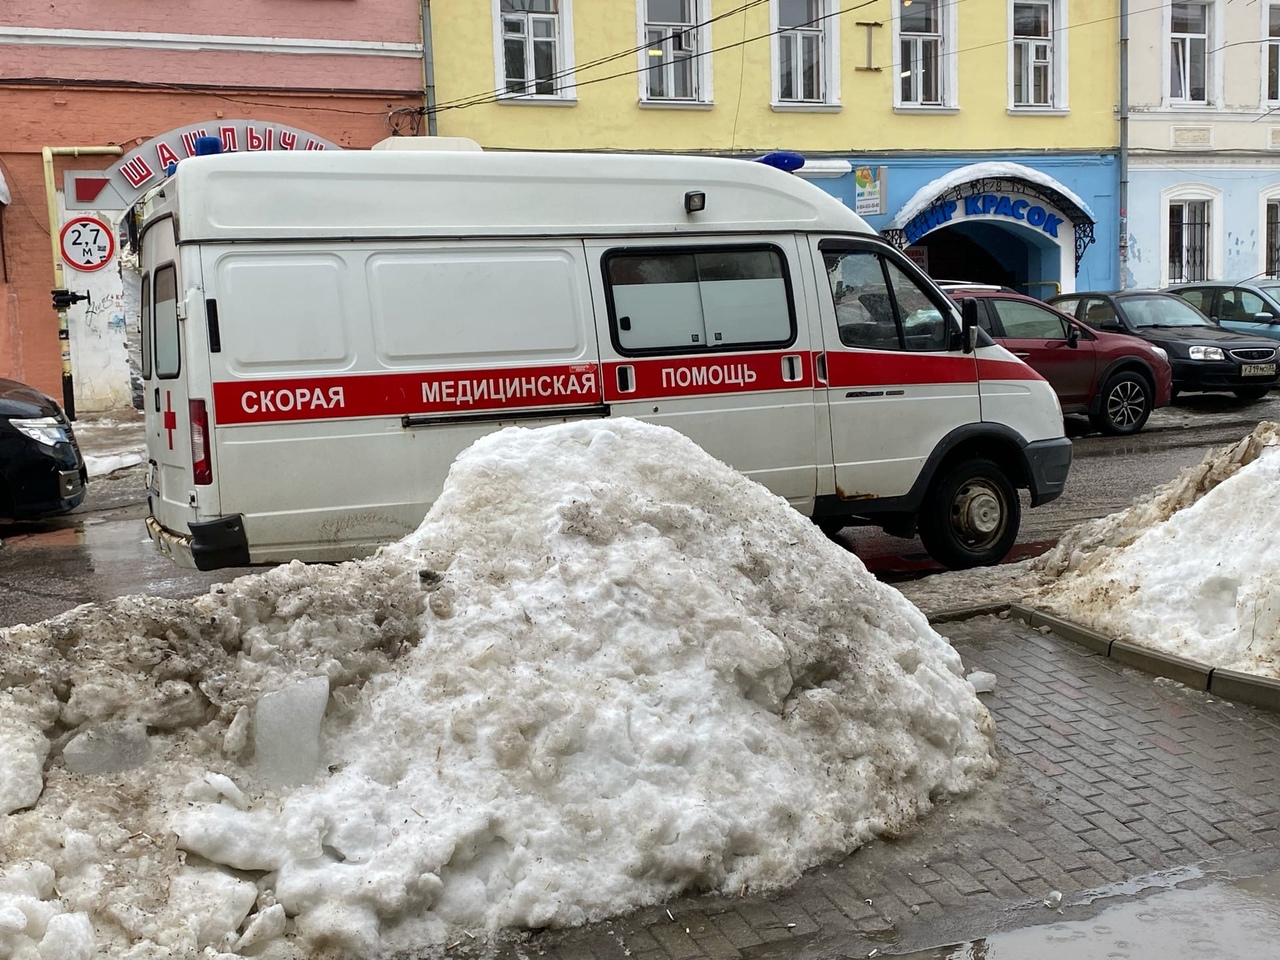 55-летний медик скорой помощи из Владимира свел счеты с жизнью в храме в центре Москвы